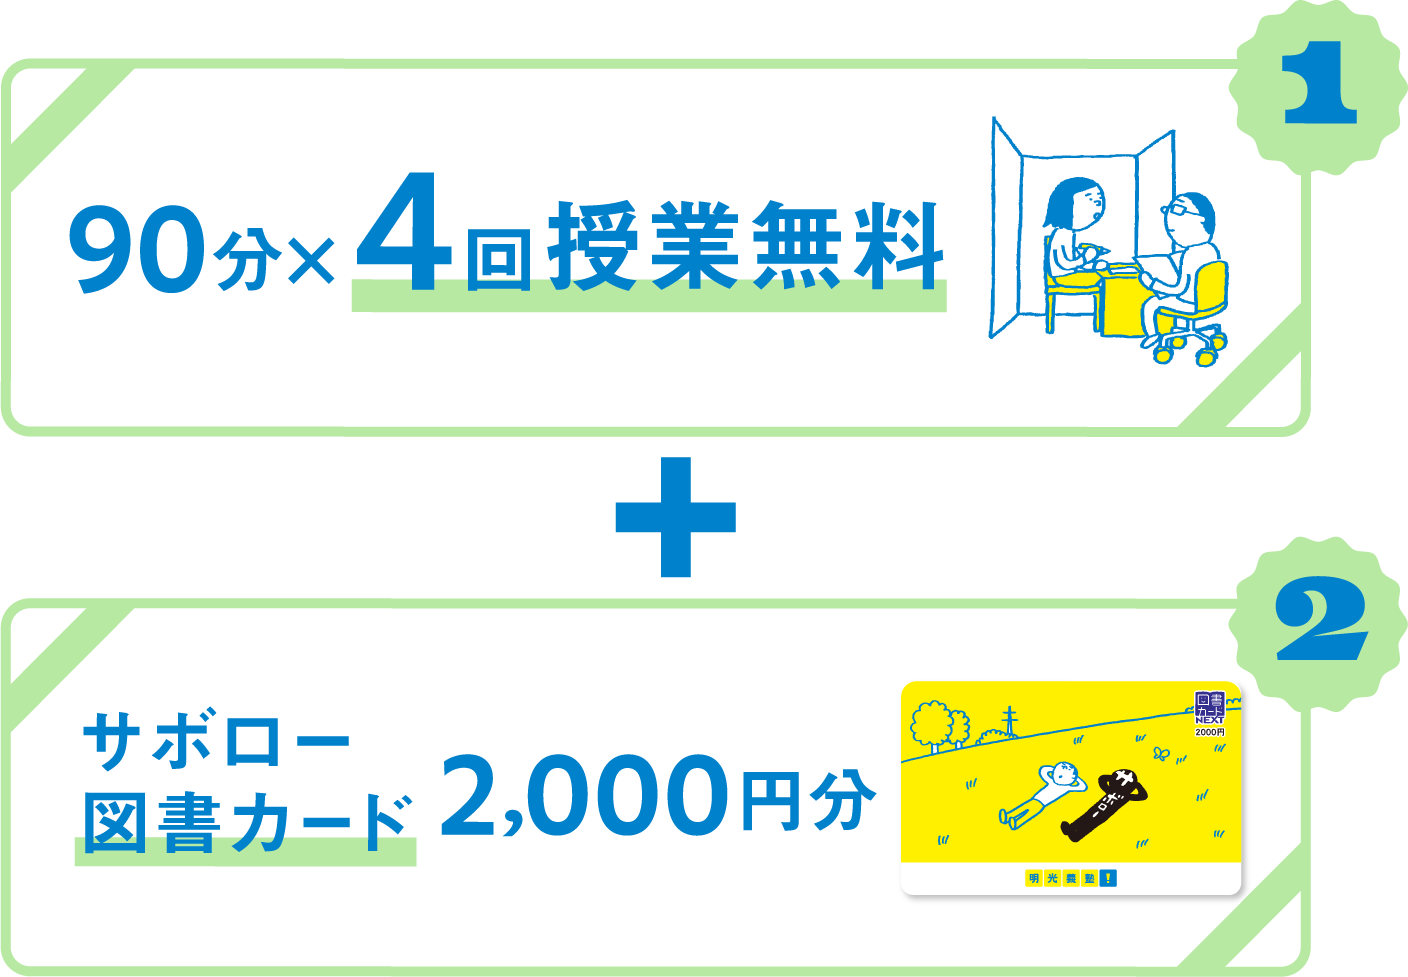 1 90分×4回授業無料 + 2 サボロー図書カード2,000円分